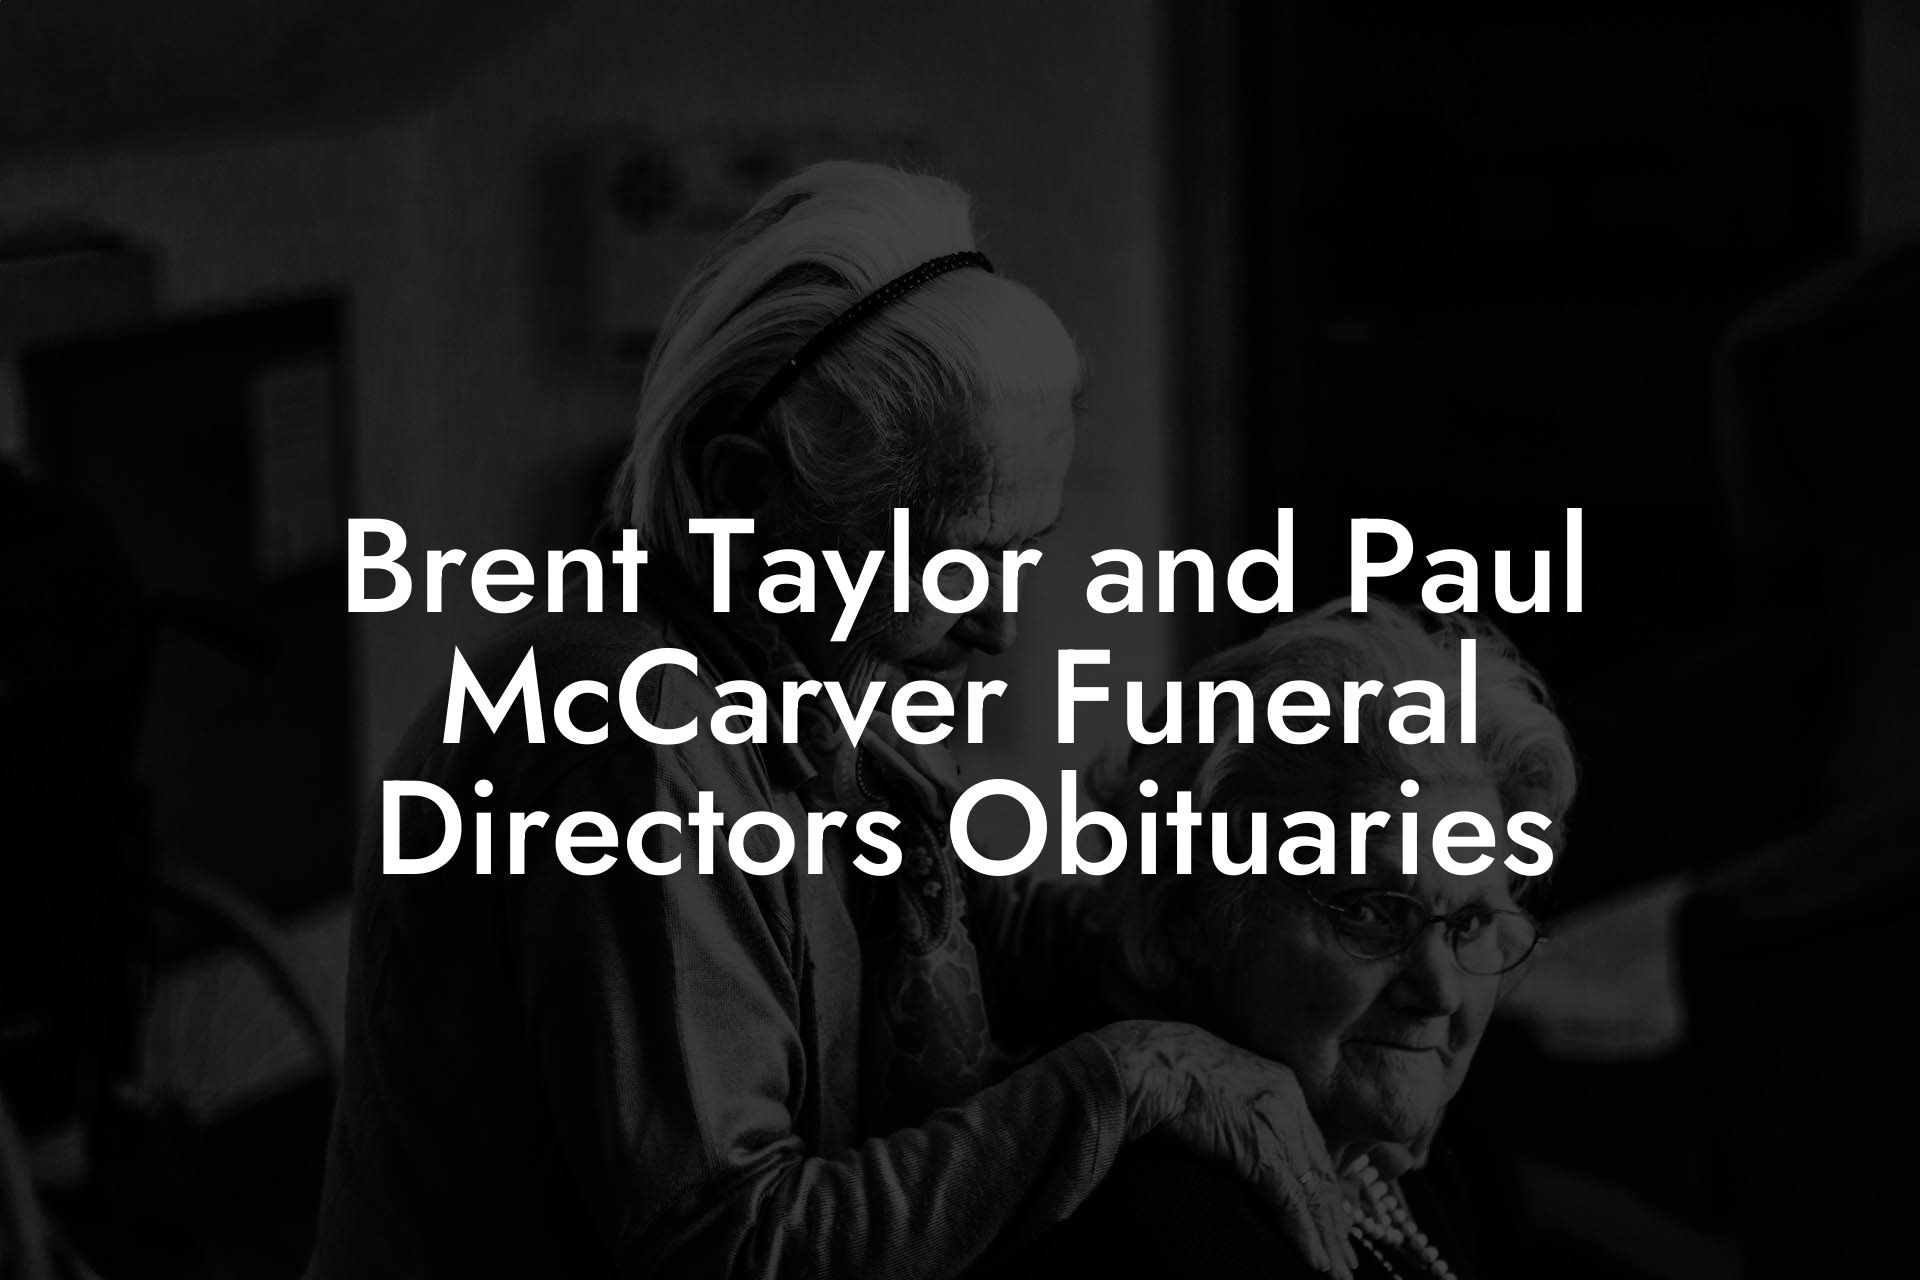 Brent Taylor and Paul McCarver Funeral Directors Obituaries